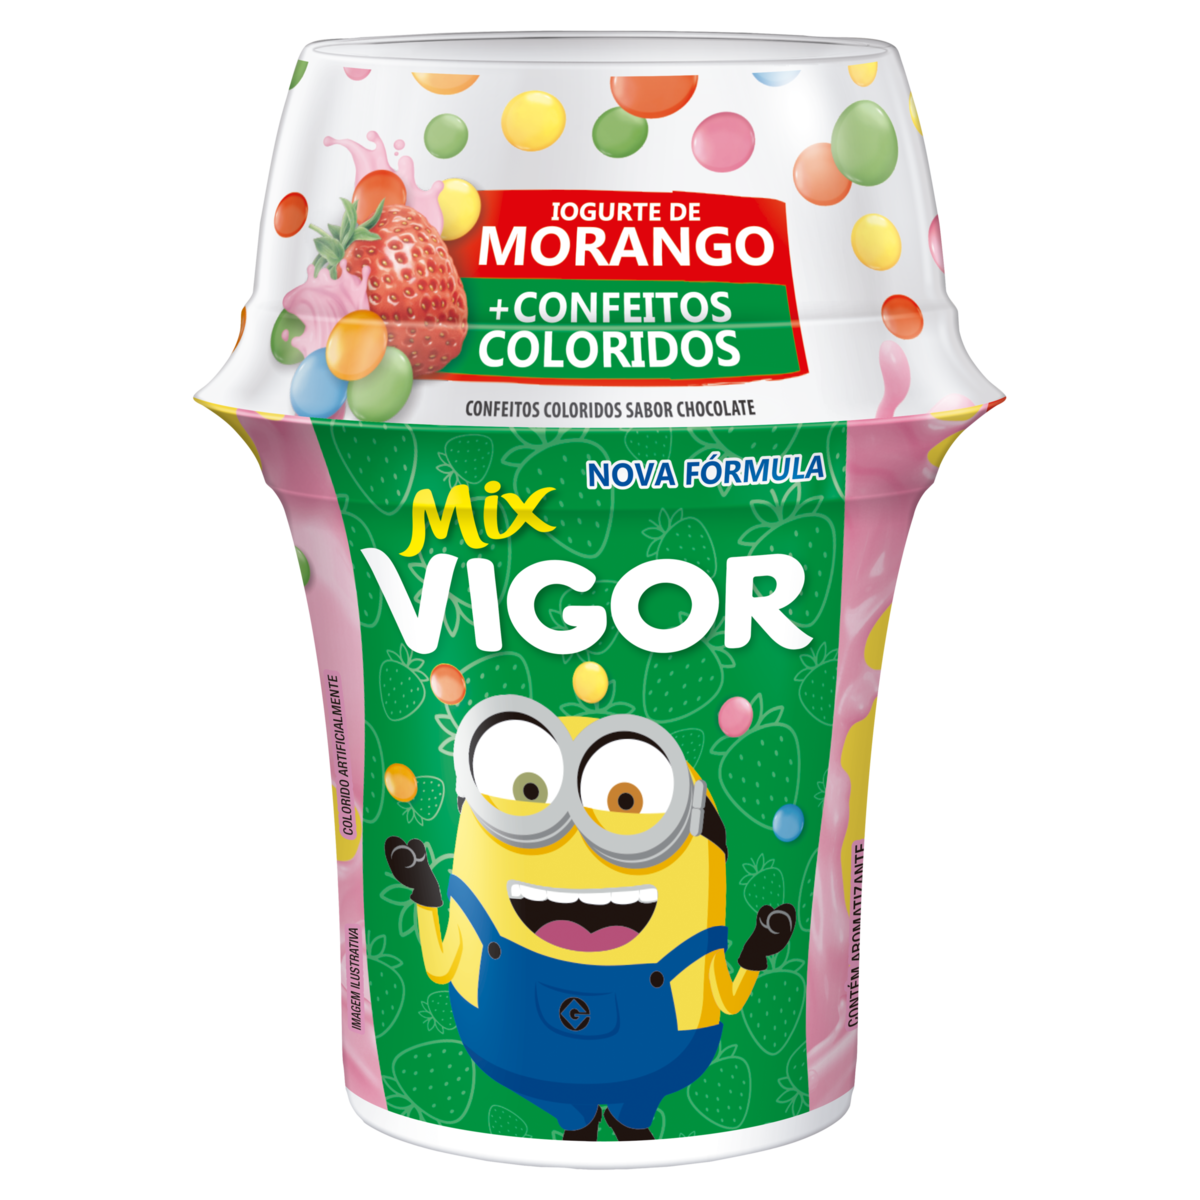 7896625210862 - IOGURTE MORANGO COM CONFEITOS COLORIDOS VIGOR MIX COPO 140G